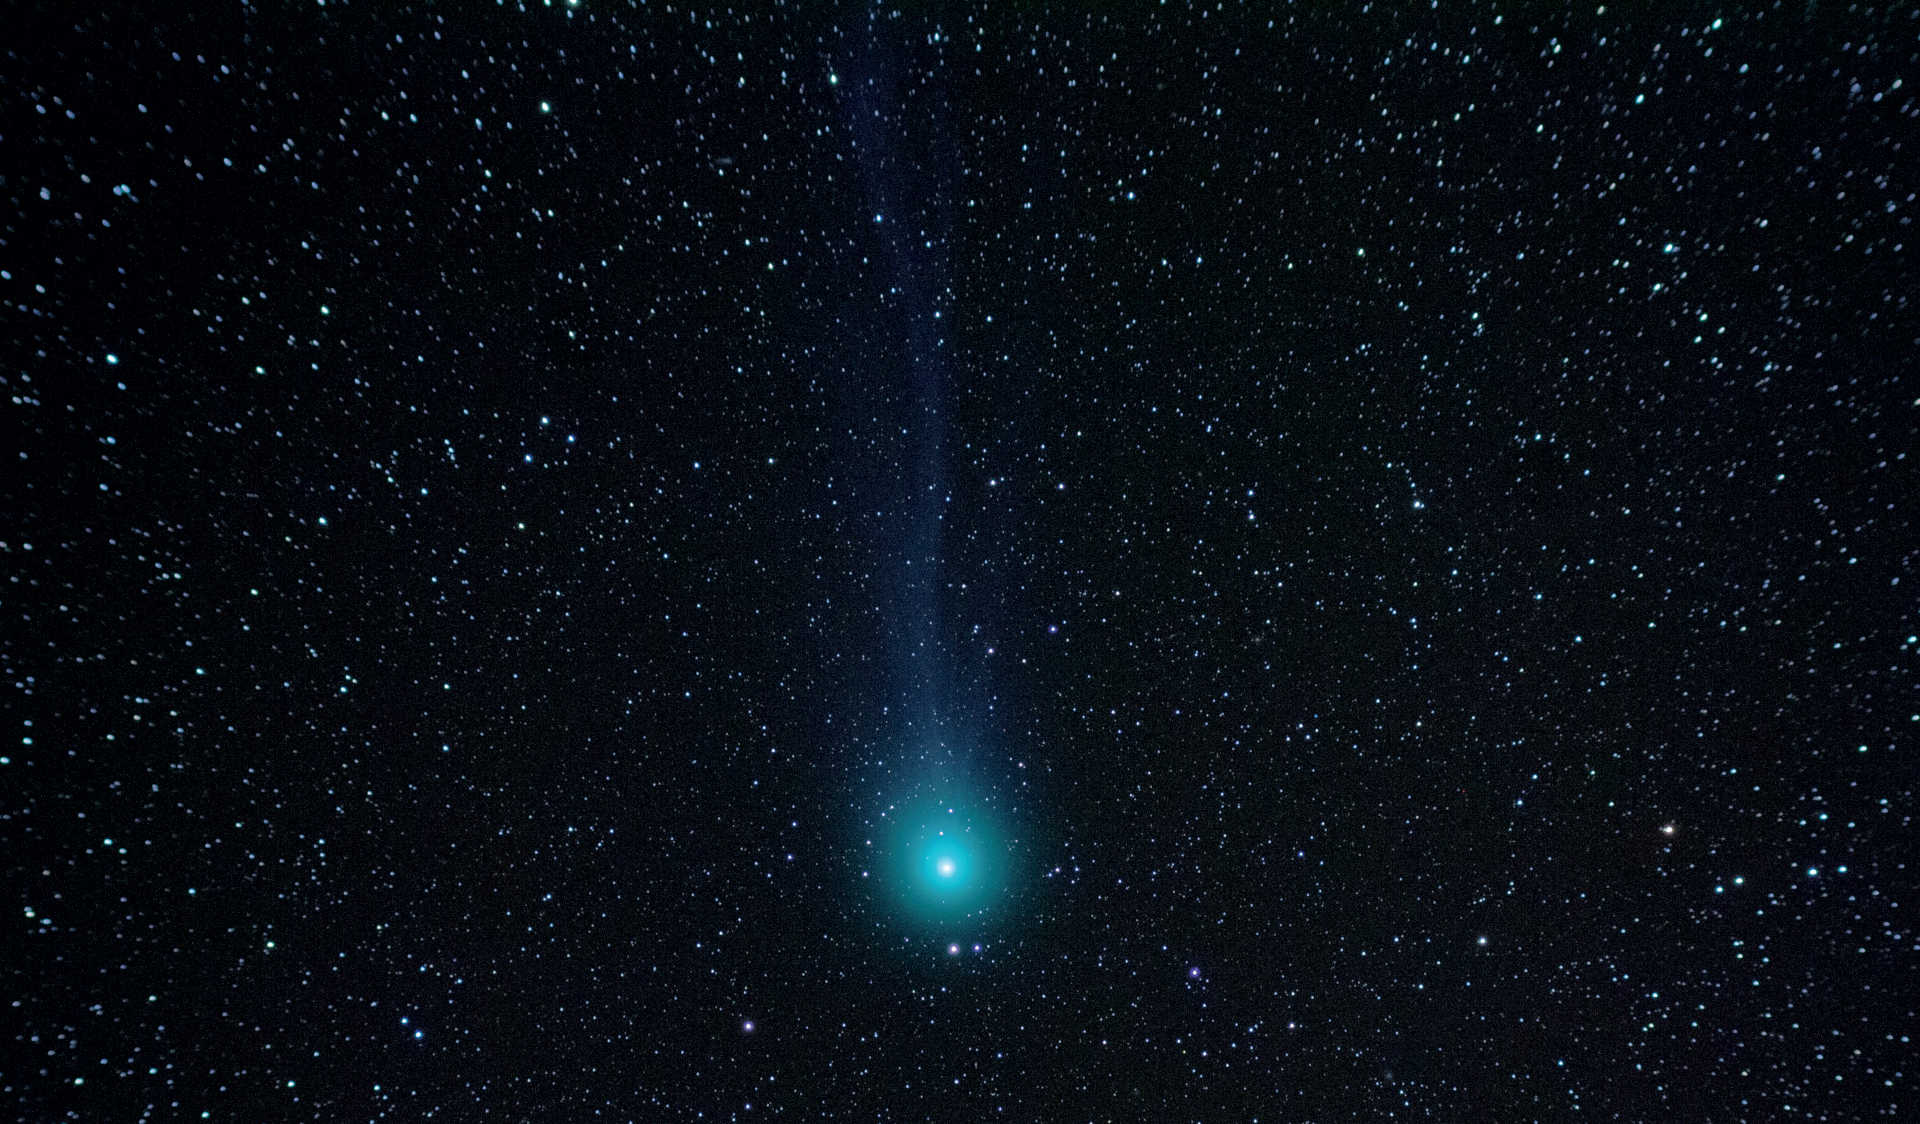 En särskild utmaning när man fotograferar kometer är att få kometens svans att synas. På denna bild från den 7 februari 2015 framträder komet C/2014 Q2 (Lovejoy) med sin diskreta svans. Fotografiet togs med en Canon DSLR monterad på ett Takahashi FS-60-teleskop (brännvidd: 355 mm; f/5,9). Summabilden är ett resultat av en addition av fem bilder, var och en med en exponeringstid på 120 sekunder. U. Dittler